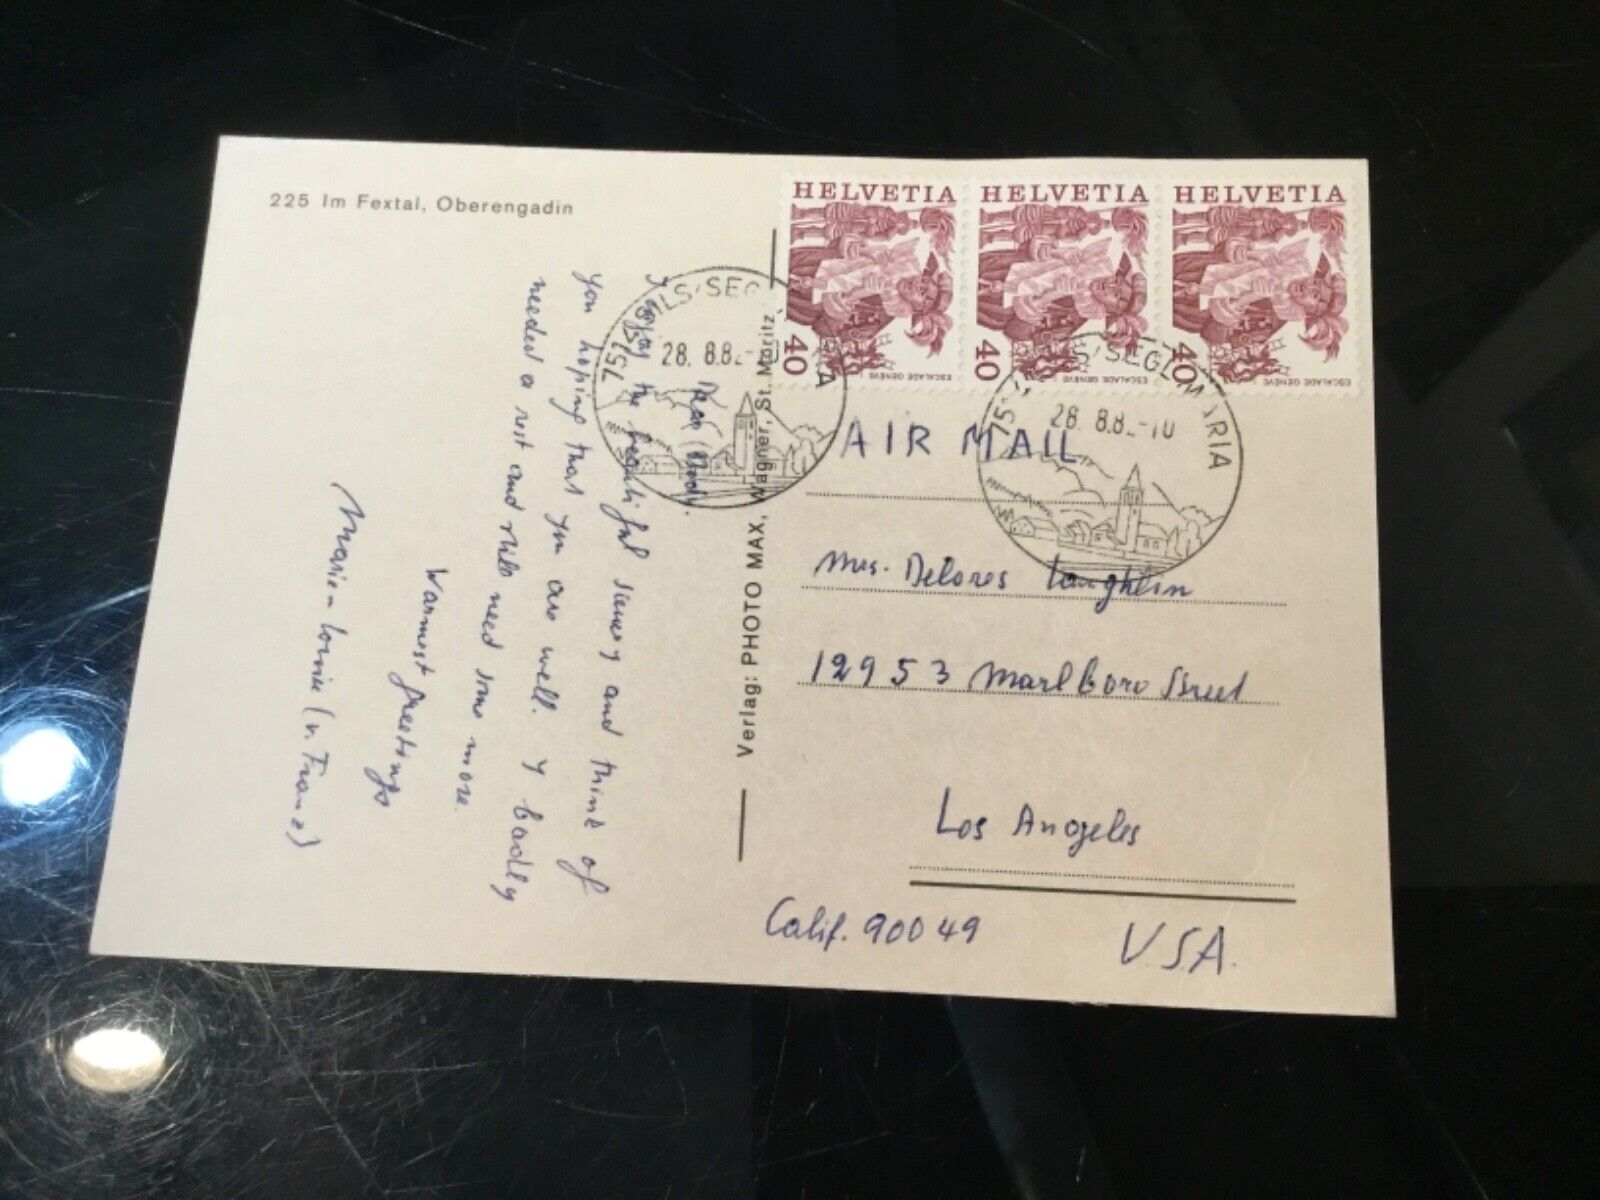 Marie-Louise von Franz Swiss Psychologist Handwritten Signed Postcard Billy Jack